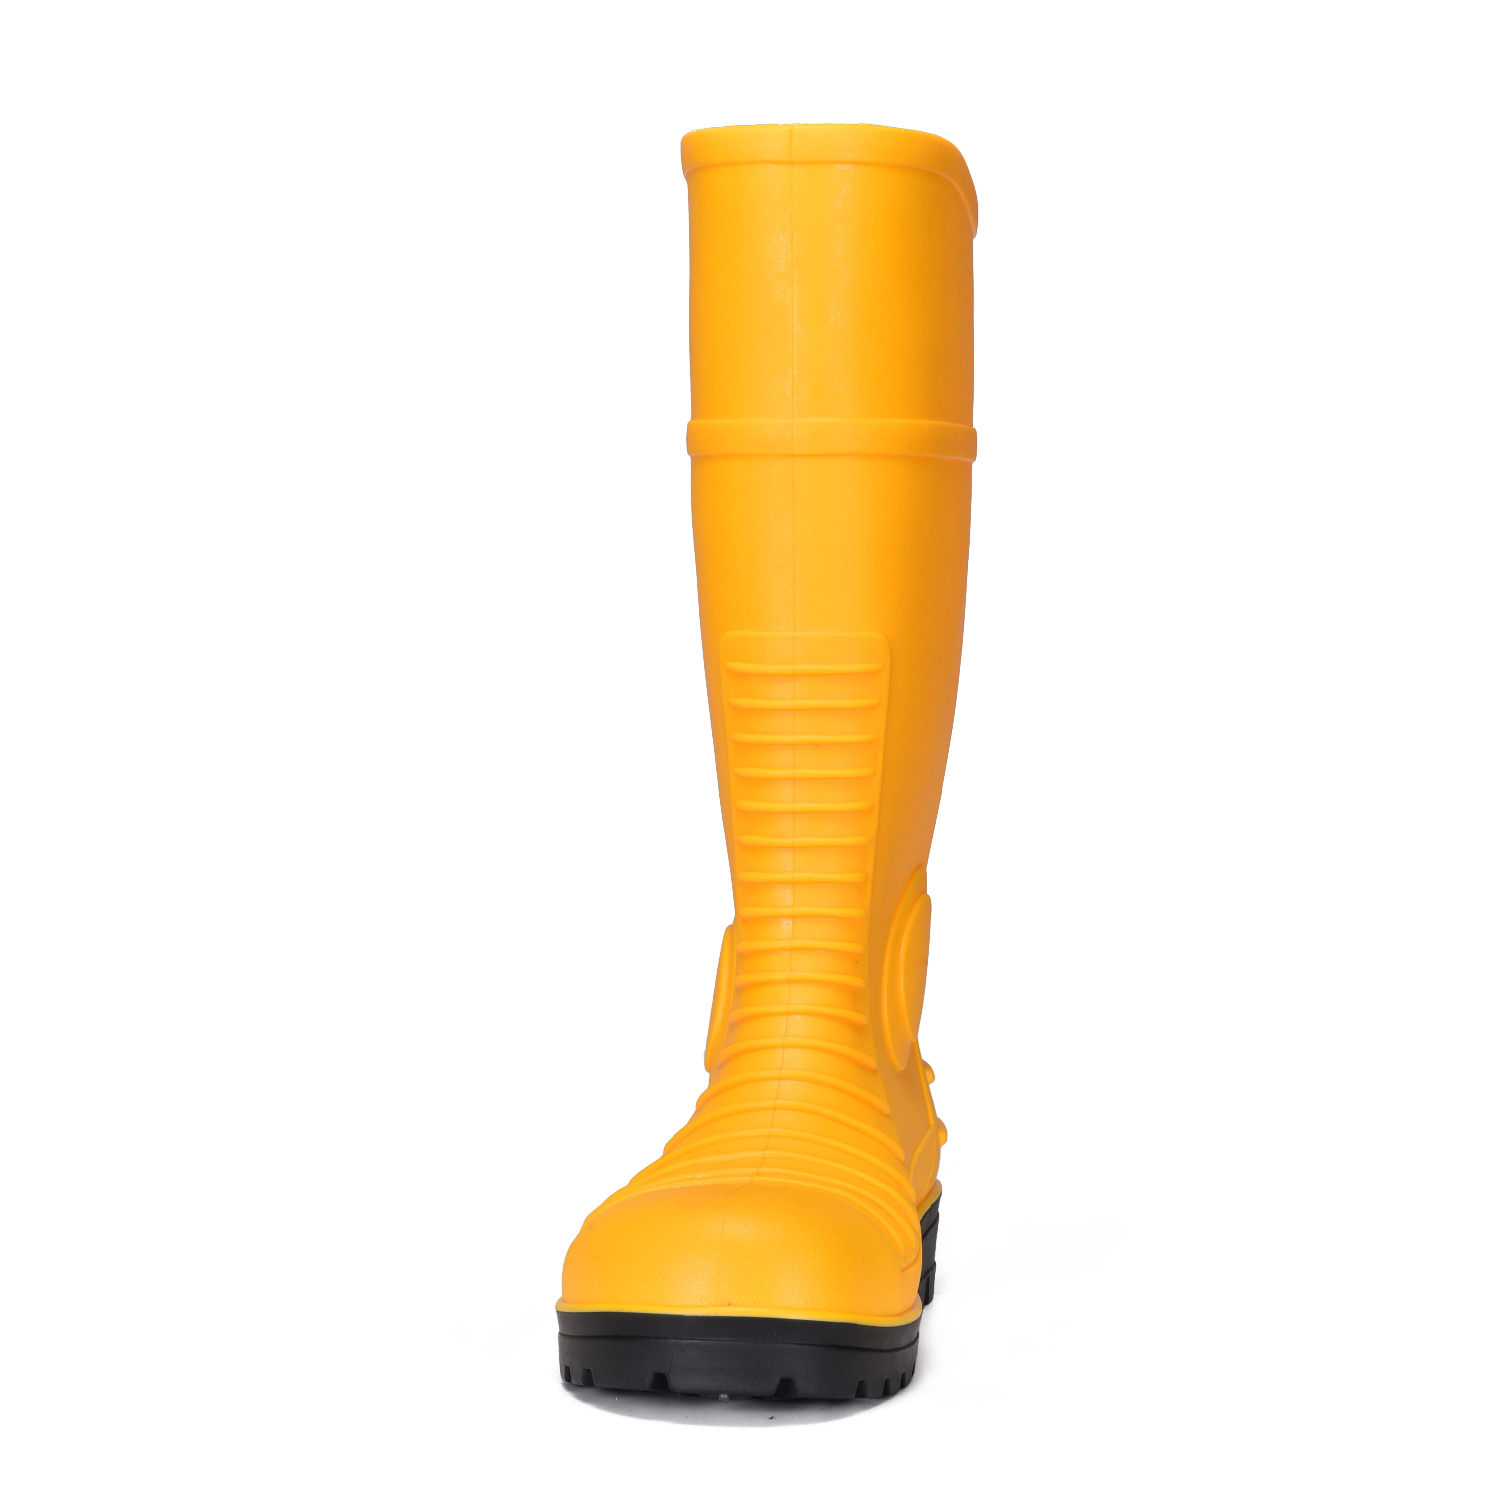 Желтые ботинки дождя безопасности ПВК минирования со стальным желтым цветом пальца ноги В-6055